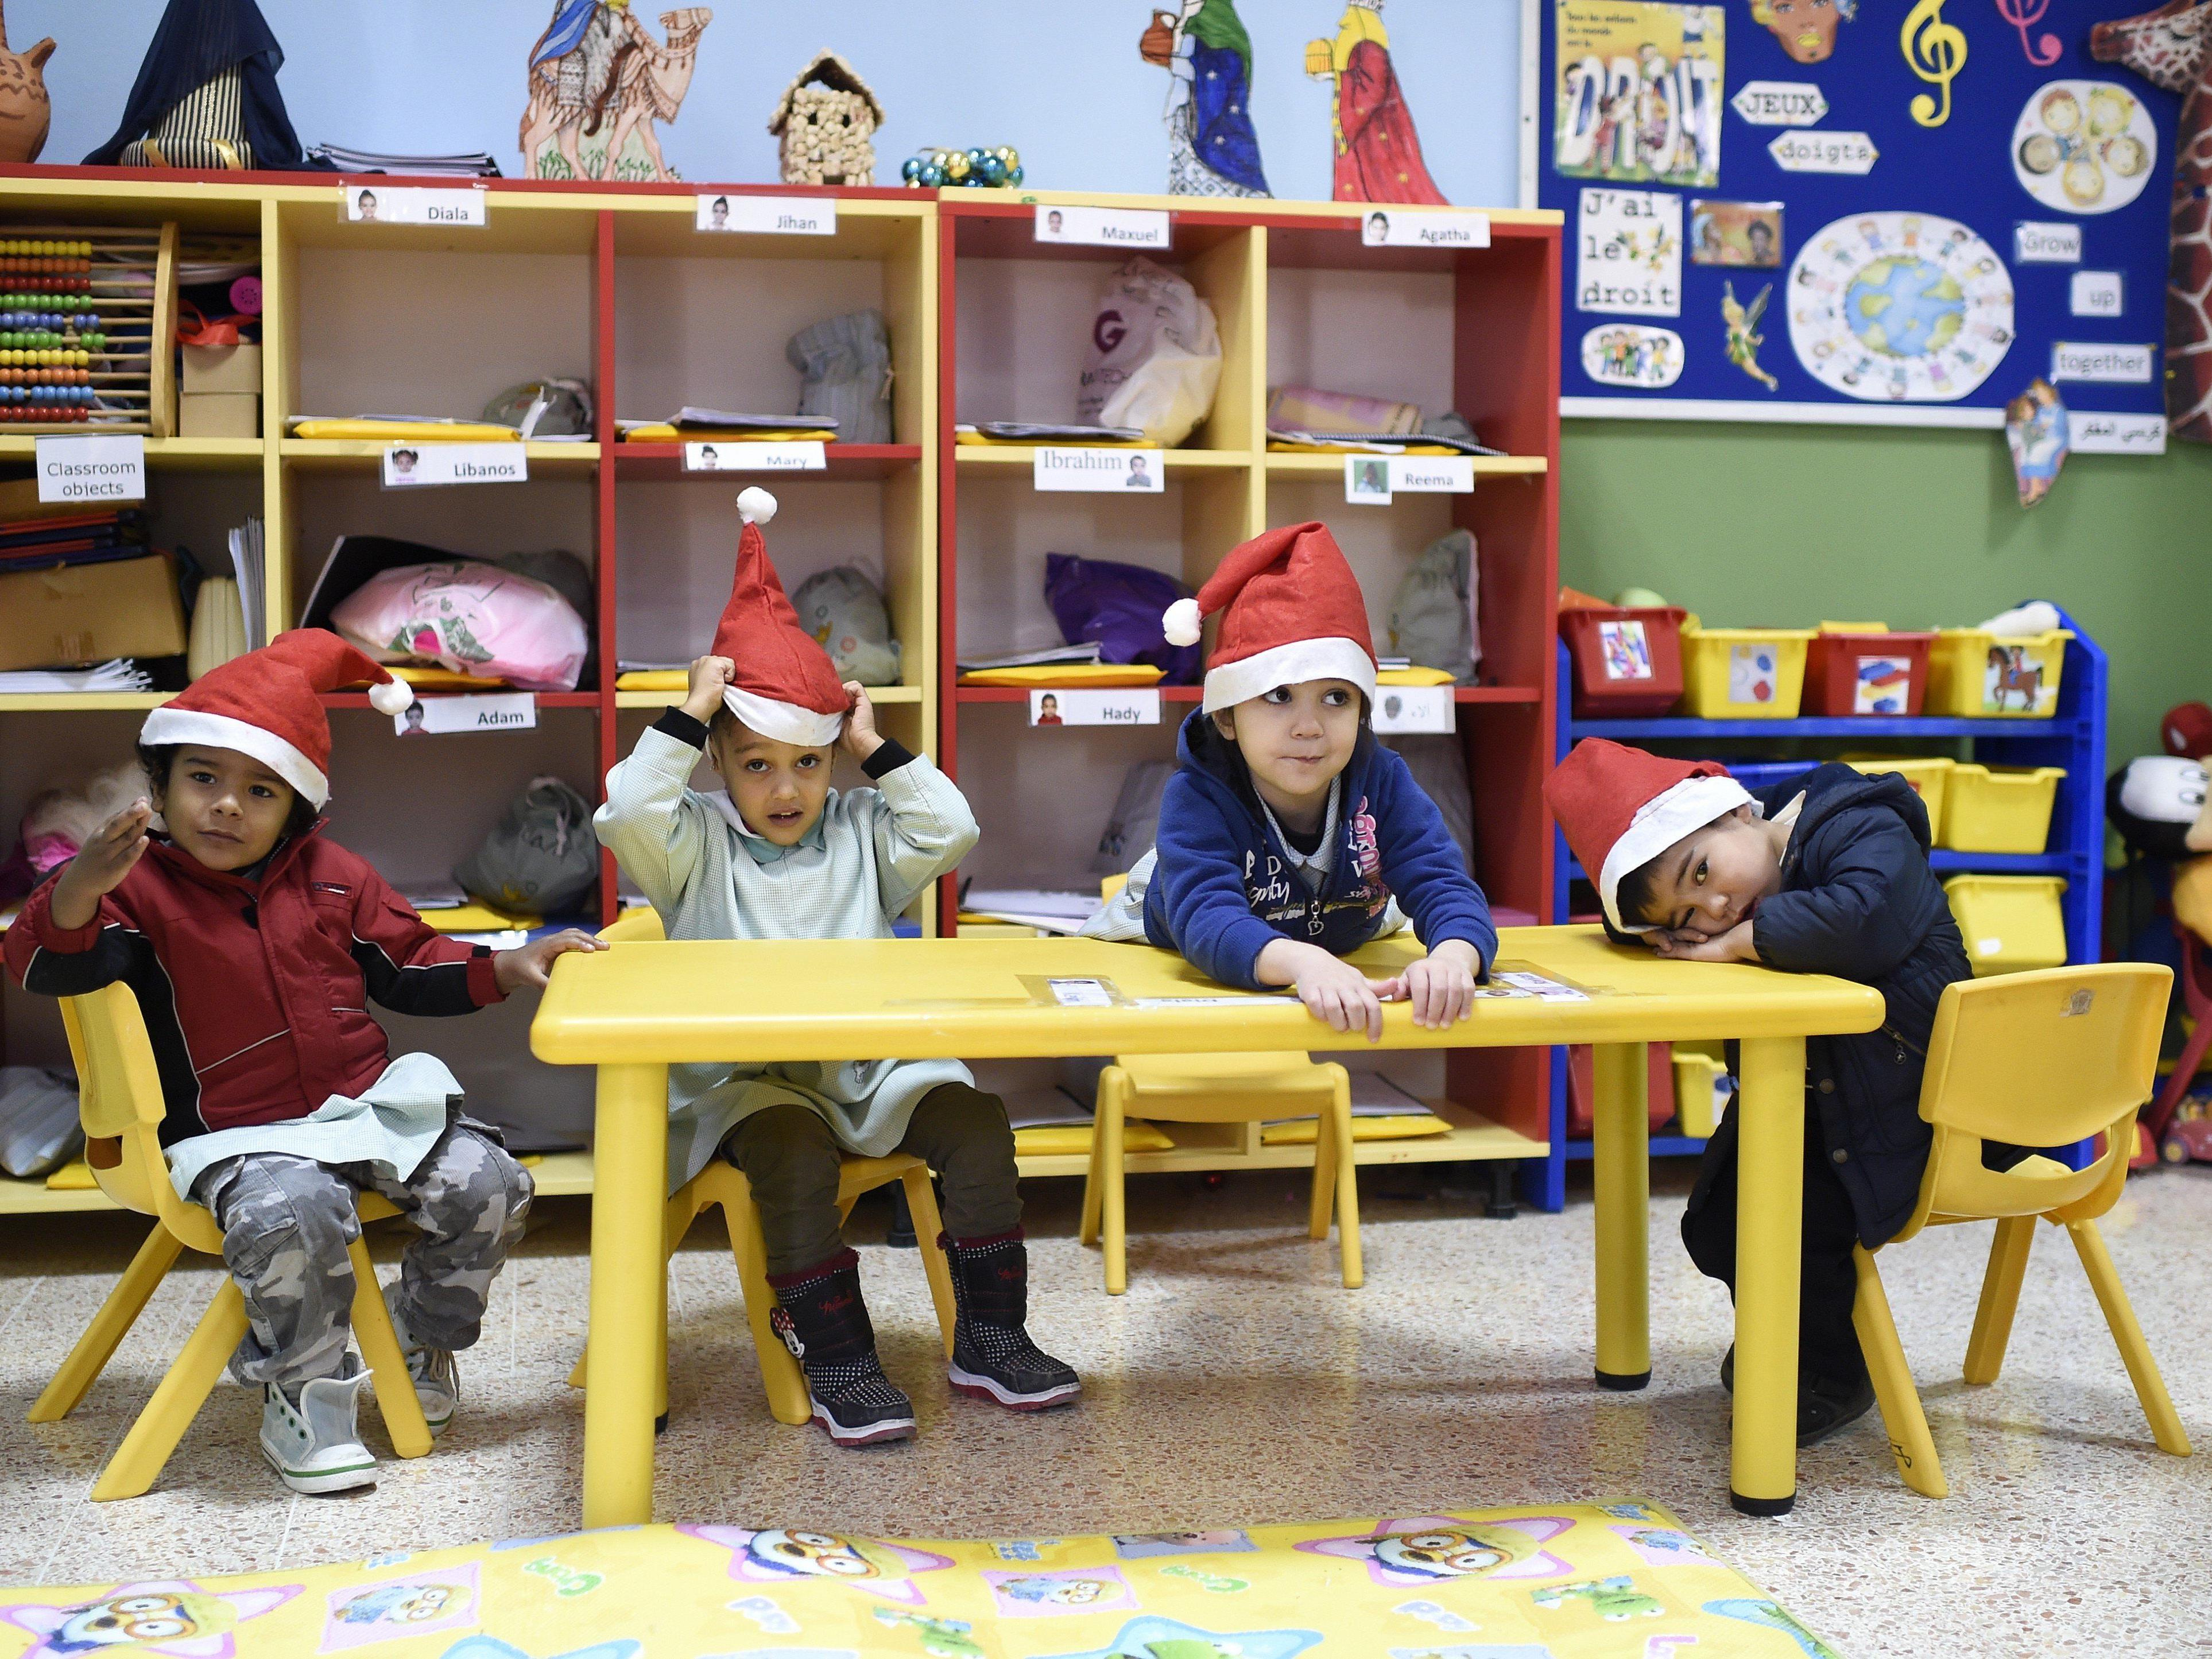 Islamische Kindergärten: 62 Prozent für strengere Kontrollen